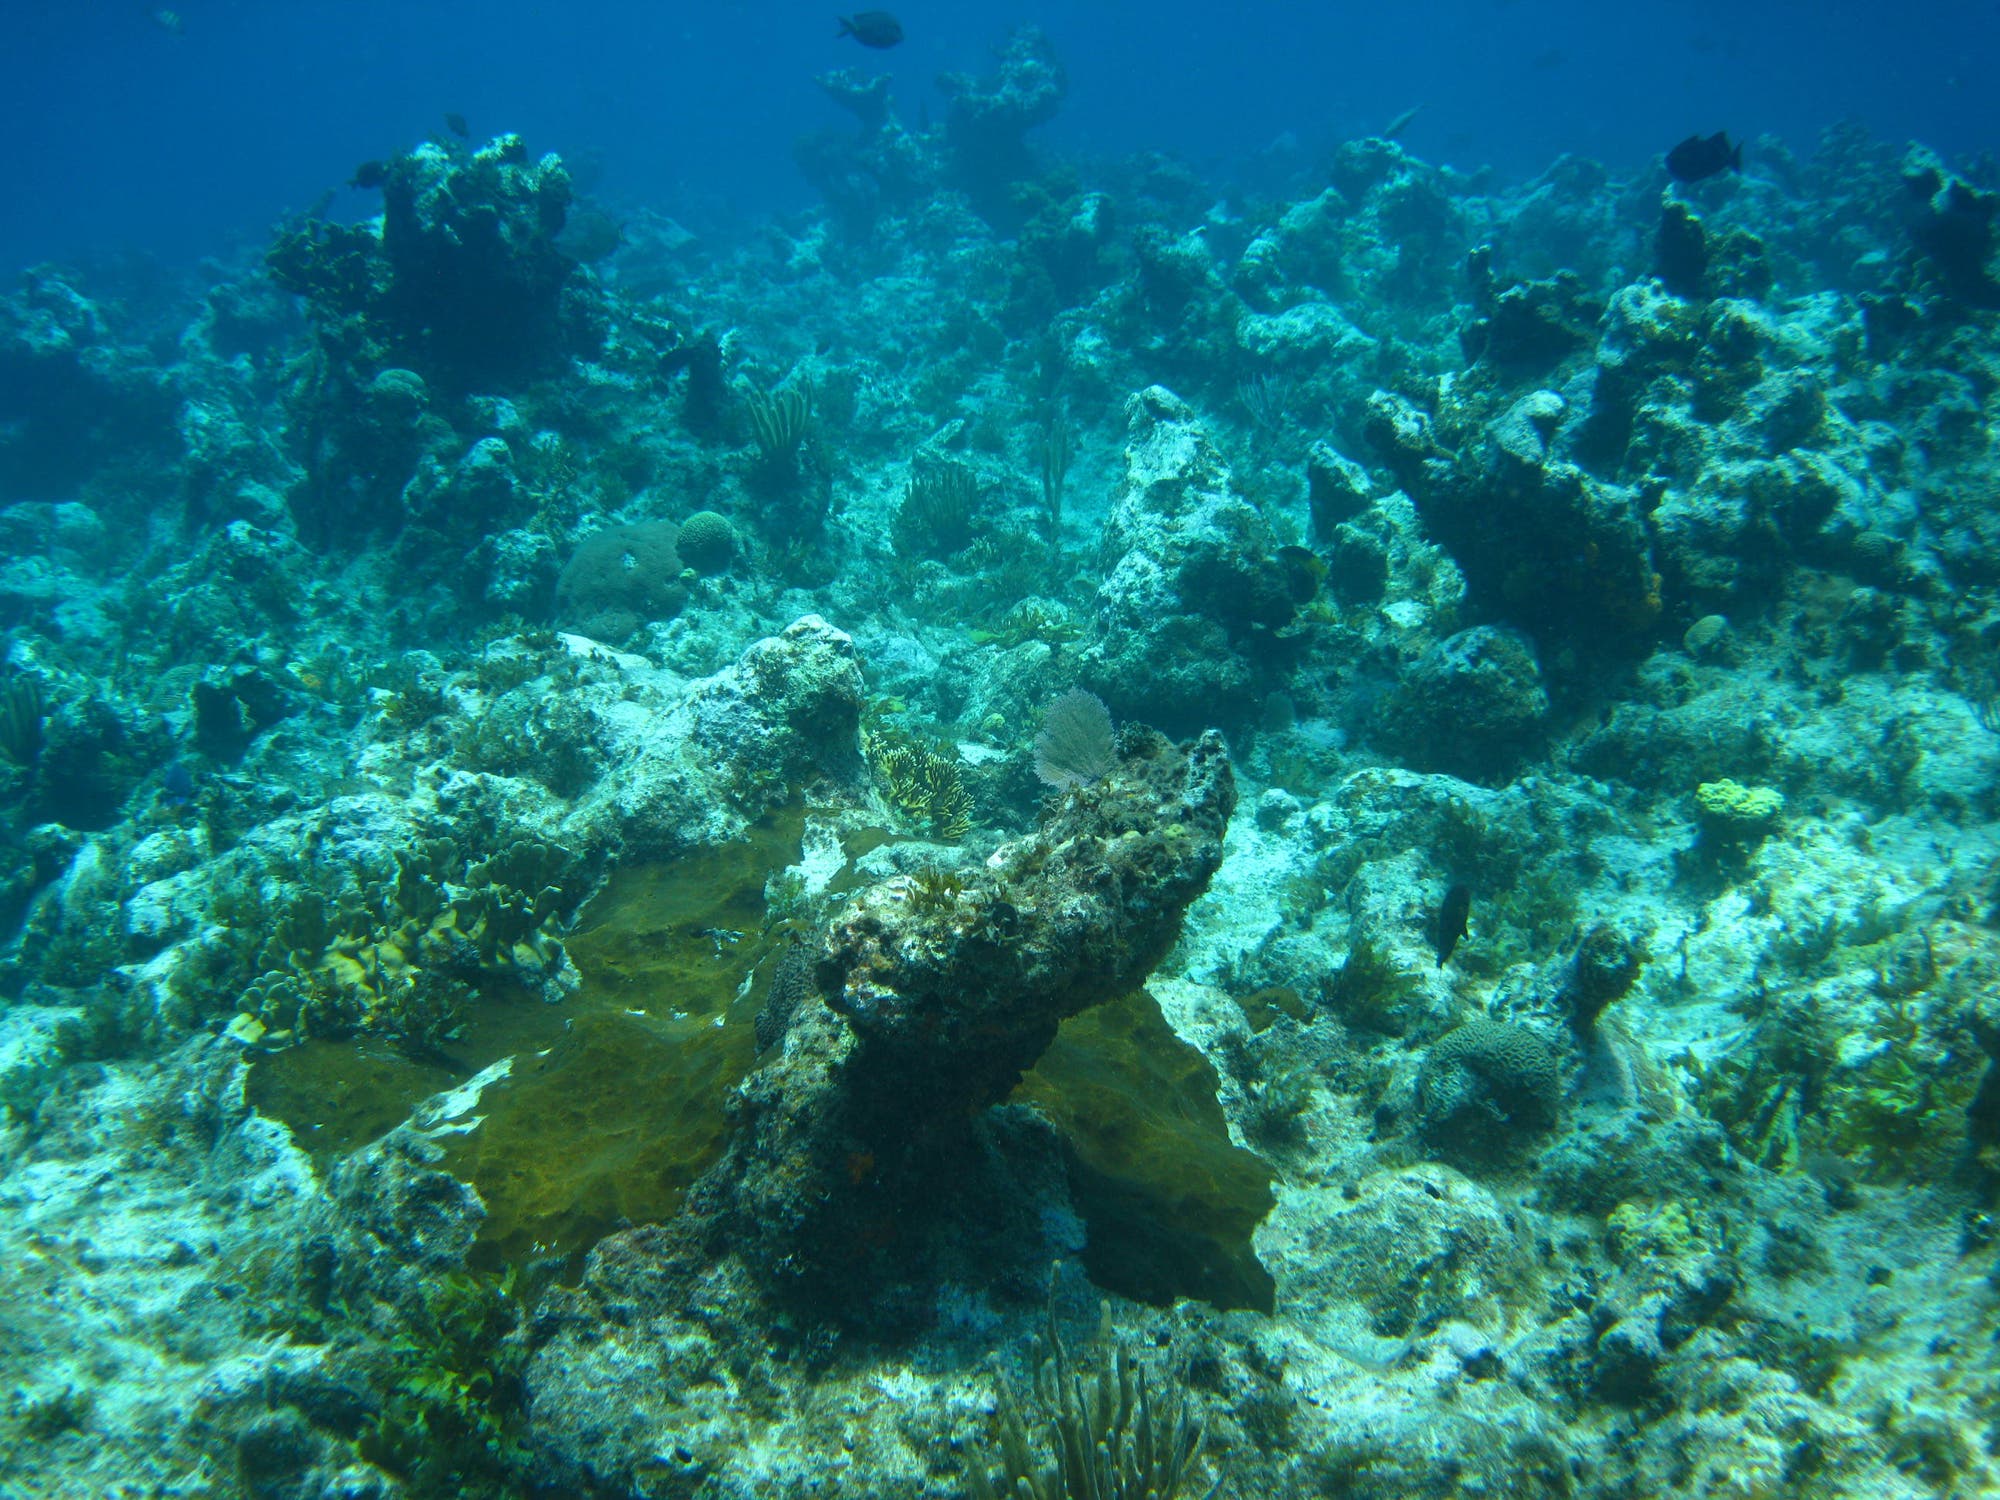 Ein teilweise mit Algen bewachsenes Riff mit wenigen Korallen